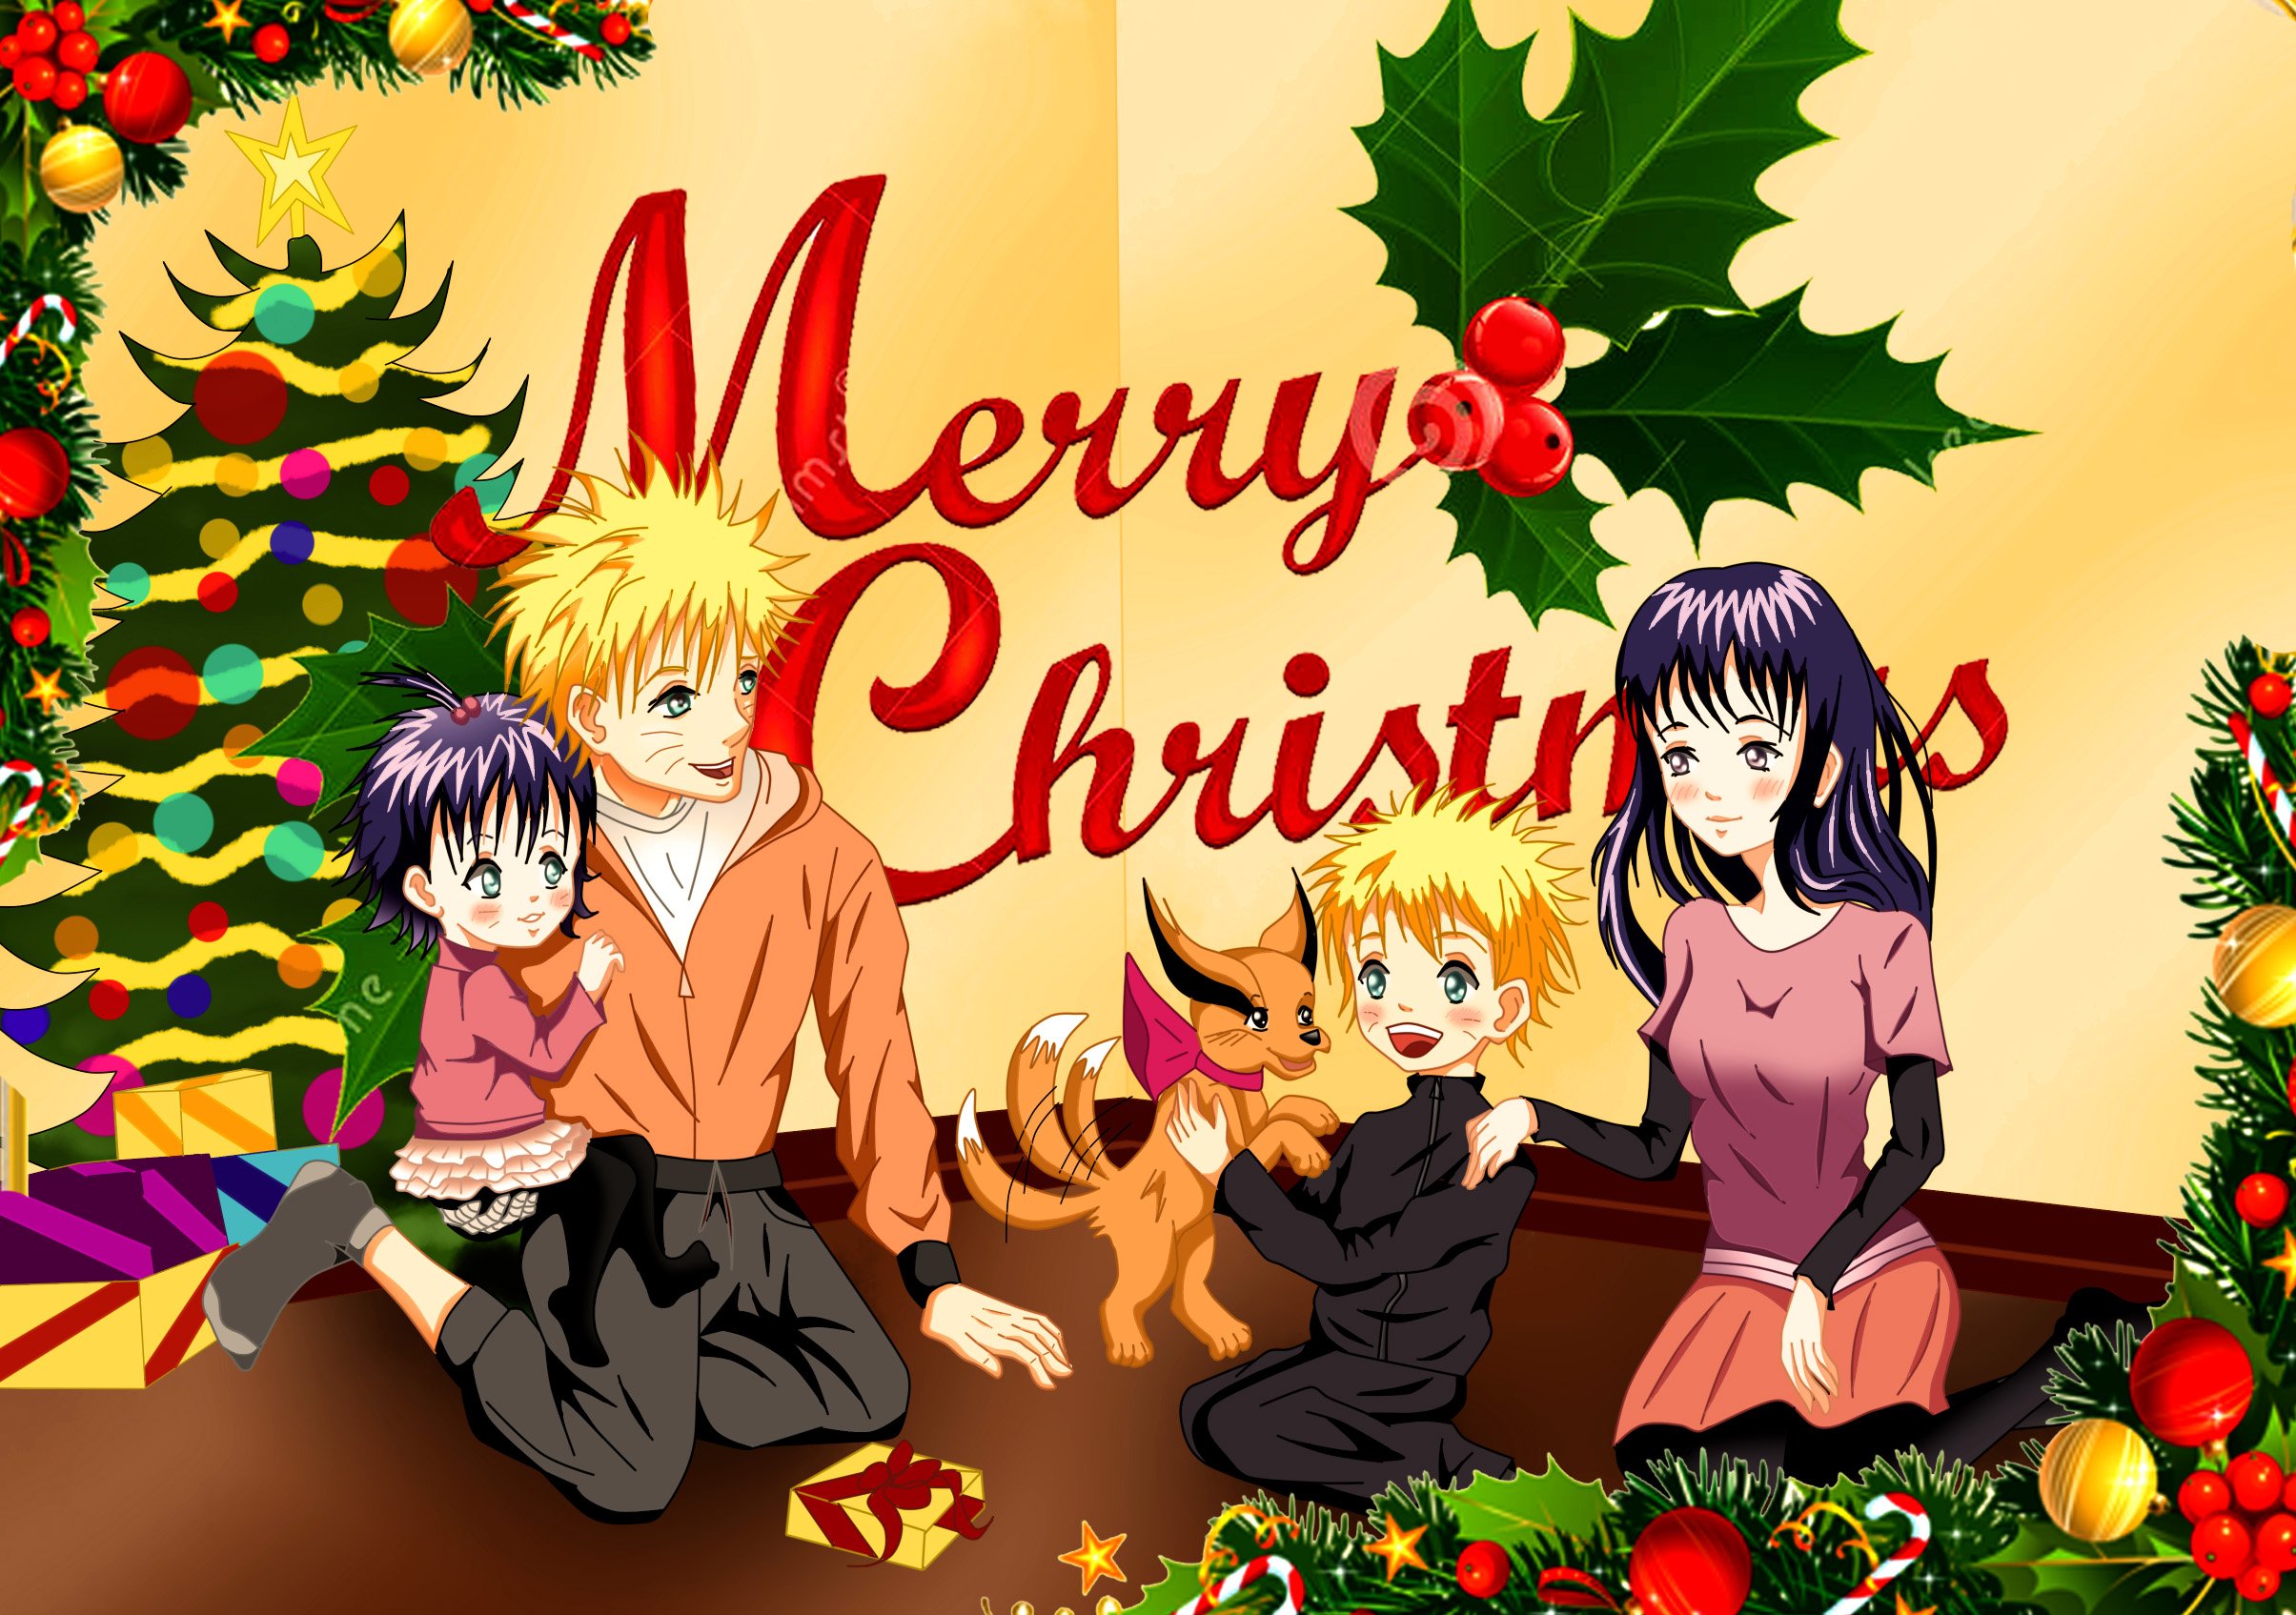 Free download Naruto Christmas